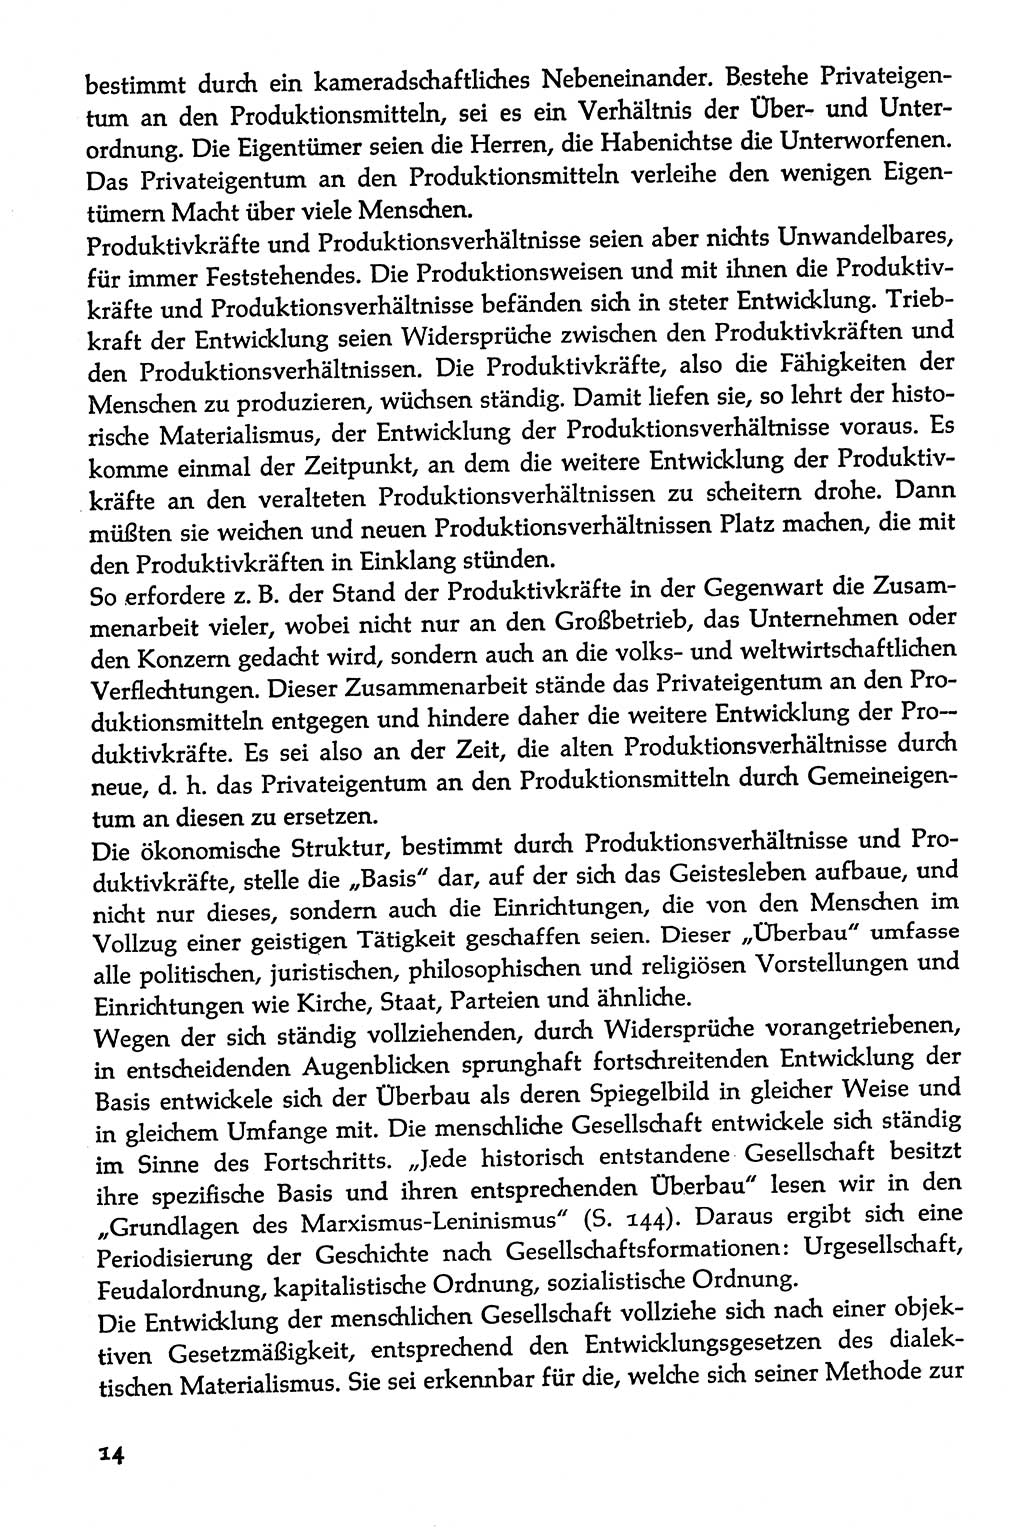 Volksdemokratische Ordnung in Mitteldeutschland [Deutsche Demokratische Republik (DDR)], Texte zur verfassungsrechtlichen Situation 1963, Seite 14 (Volksdem. Ordn. Md. DDR 1963, S. 14)